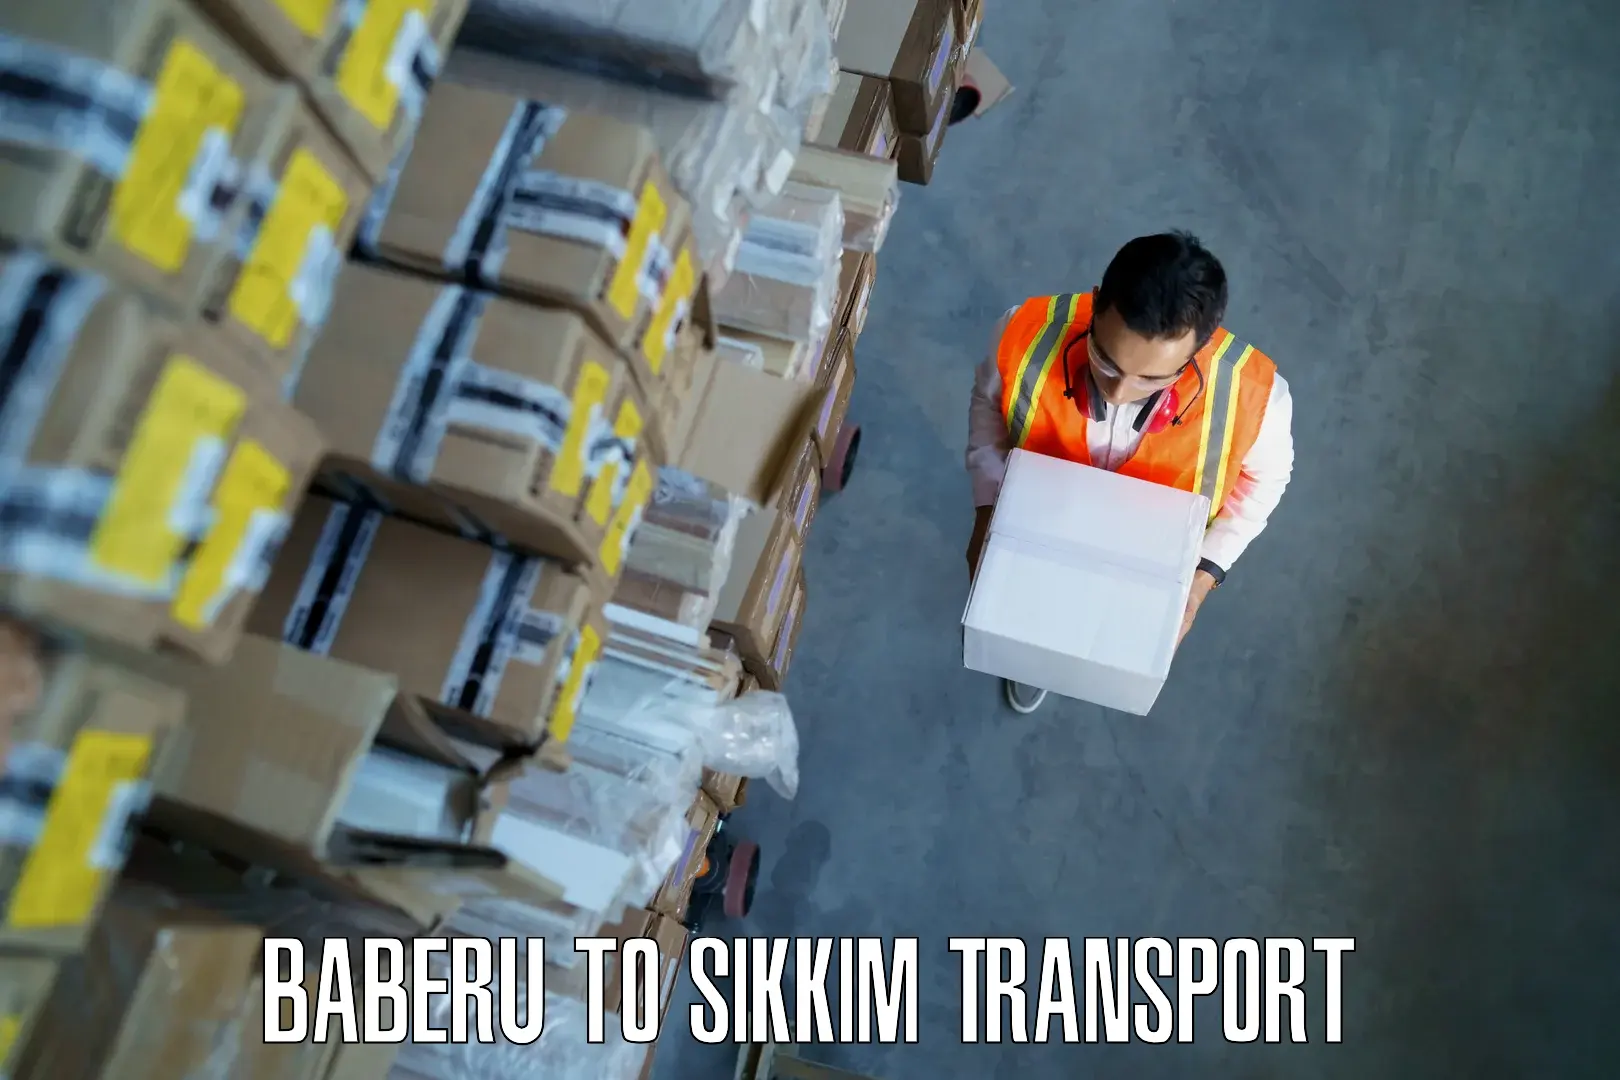 Online transport service Baberu to Sikkim